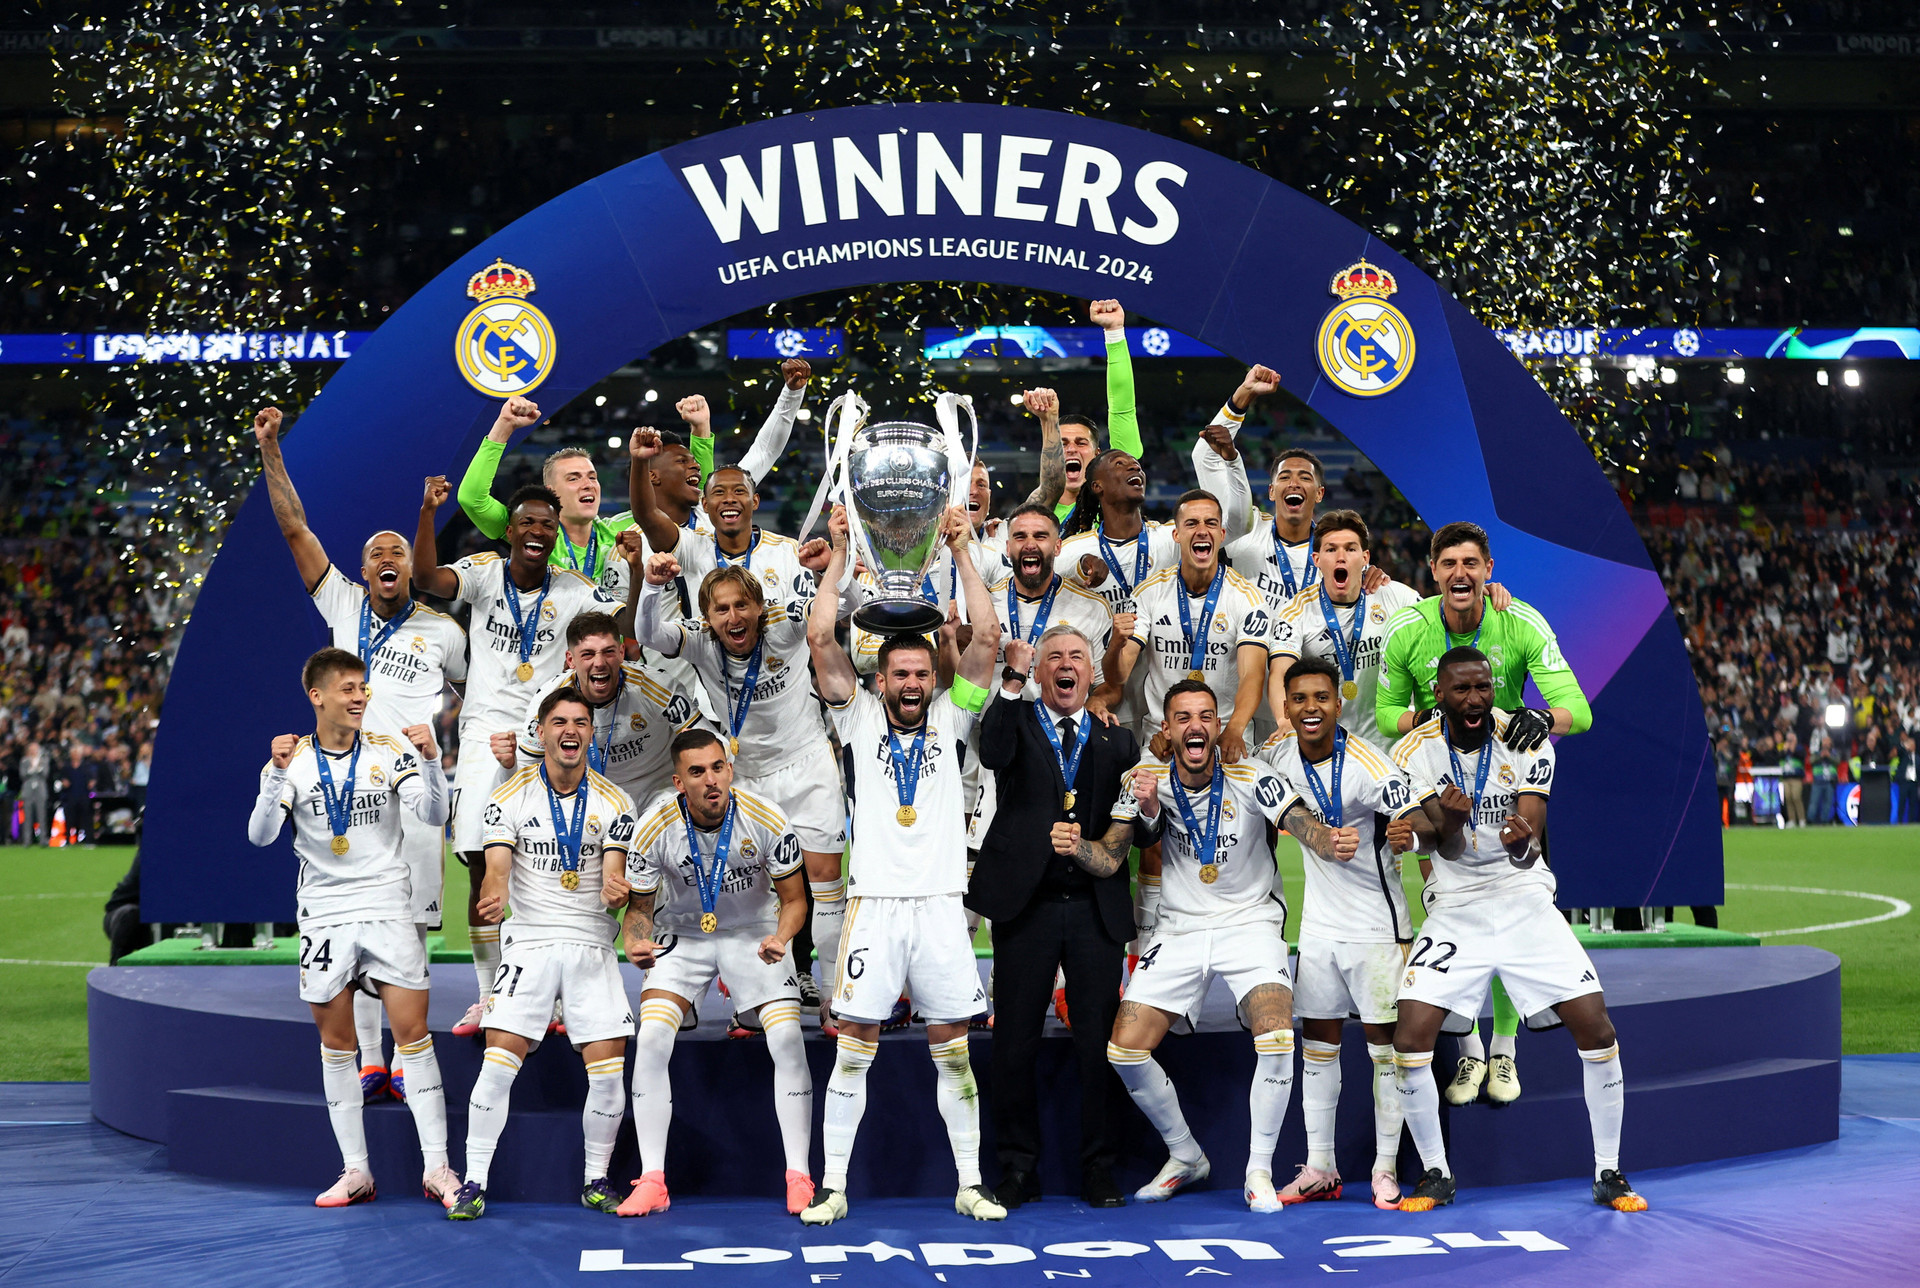 Sáng nay (2/6) trên sân Wembley, Real Madrid lại vô địch. Đây là danh hiệu Champions League thứ 6 trong 8 năm, lần thứ 15 trong lịch sử của Real Madrid. (Ảnh: Reuters)